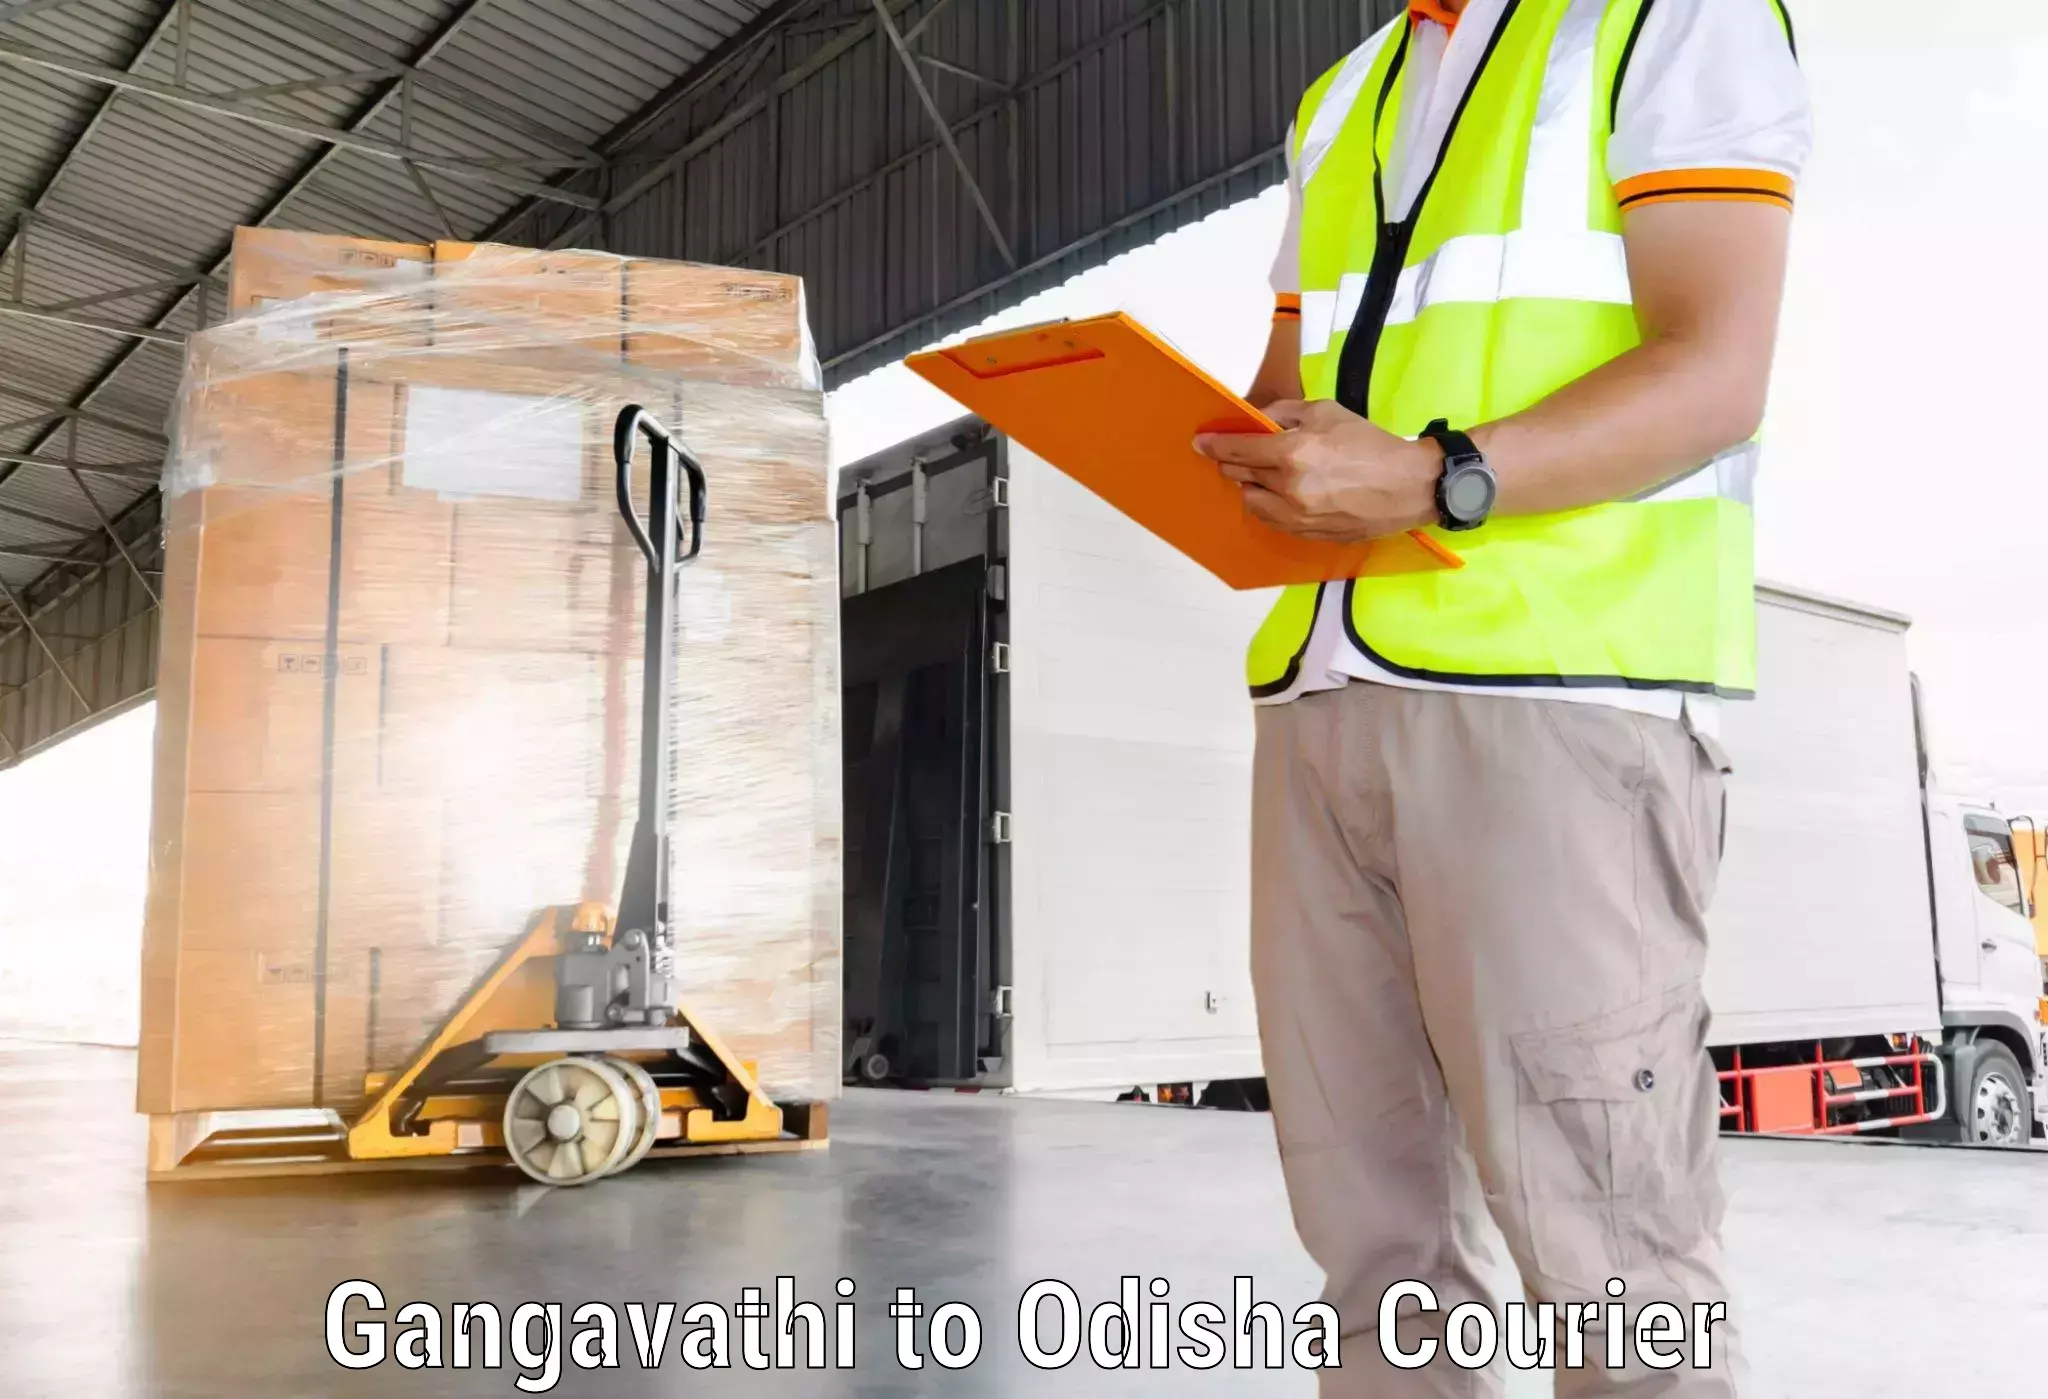 Affordable parcel service Gangavathi to IIT Bhubaneshwar